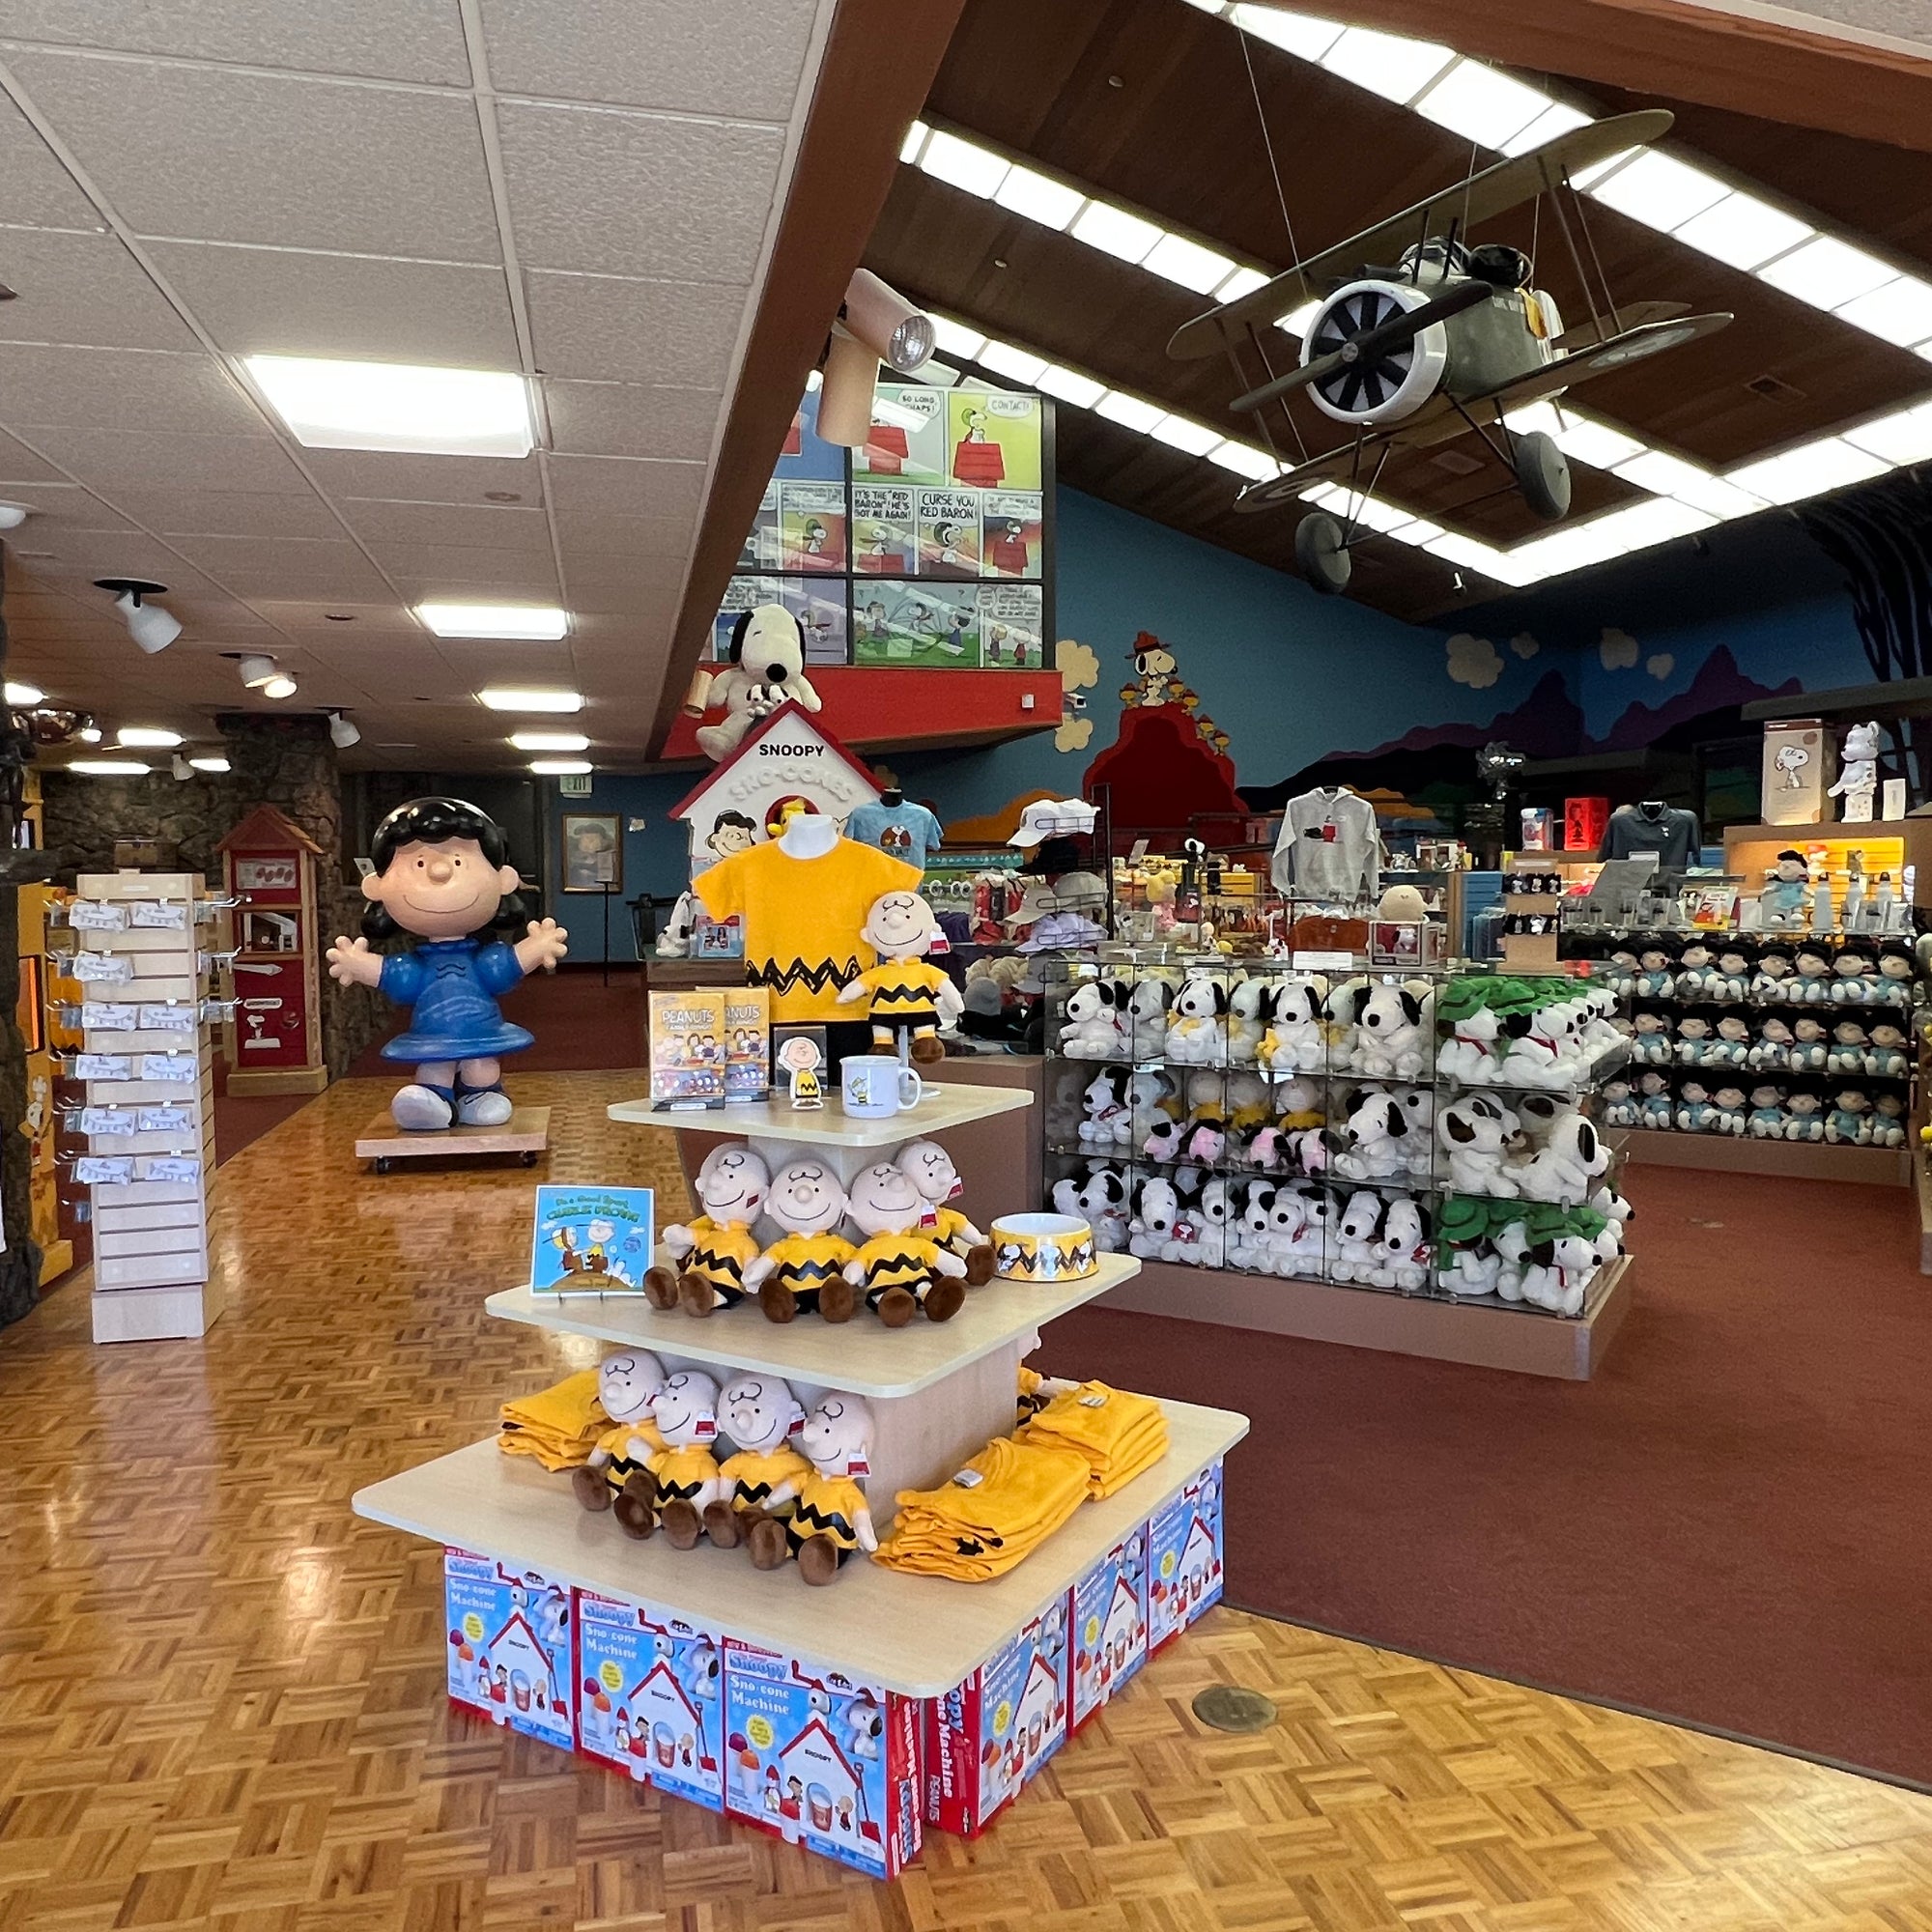 Snoopy's Gallery & Gift Shop — Snoopy's Gallery & Gift Shop